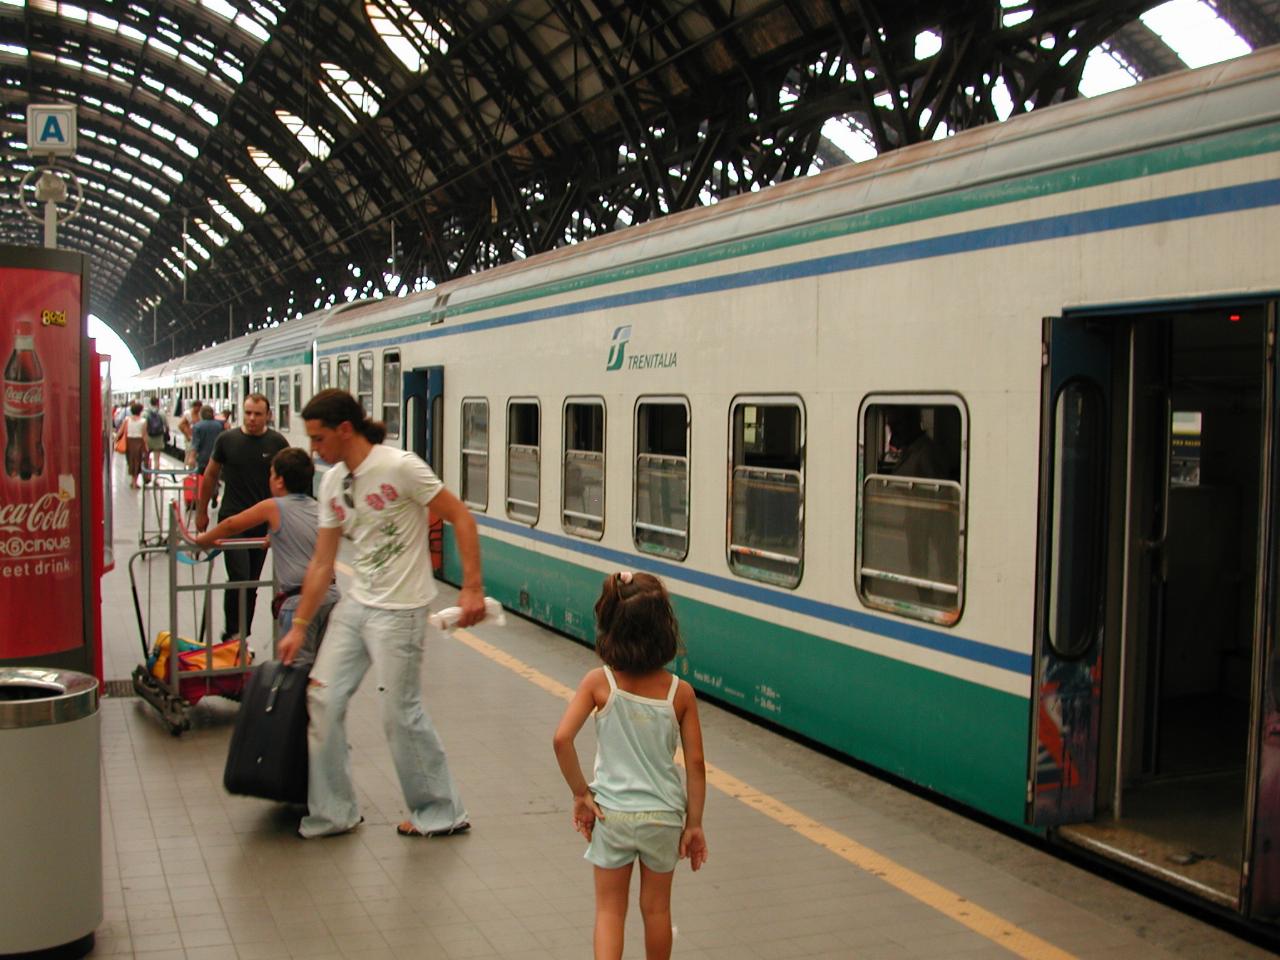 Train to Lecco and Tirano (via Monza) at Milan's main station